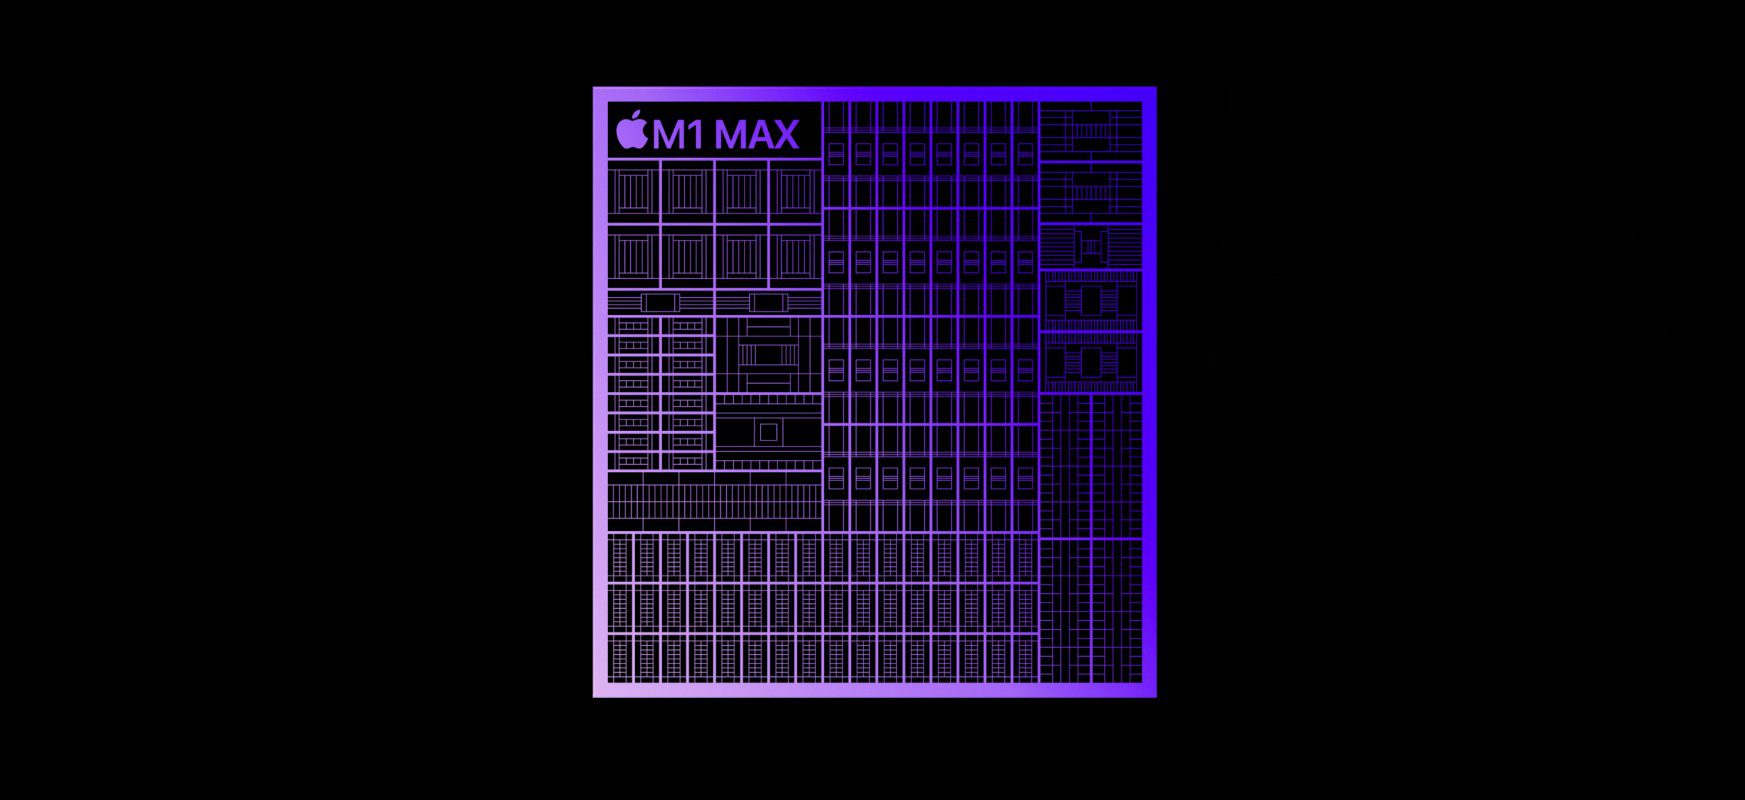 MacBook Pro 16 mit M1 Max läuft in den ersten Leistungstests buchstäblich über Konkurrenten 70